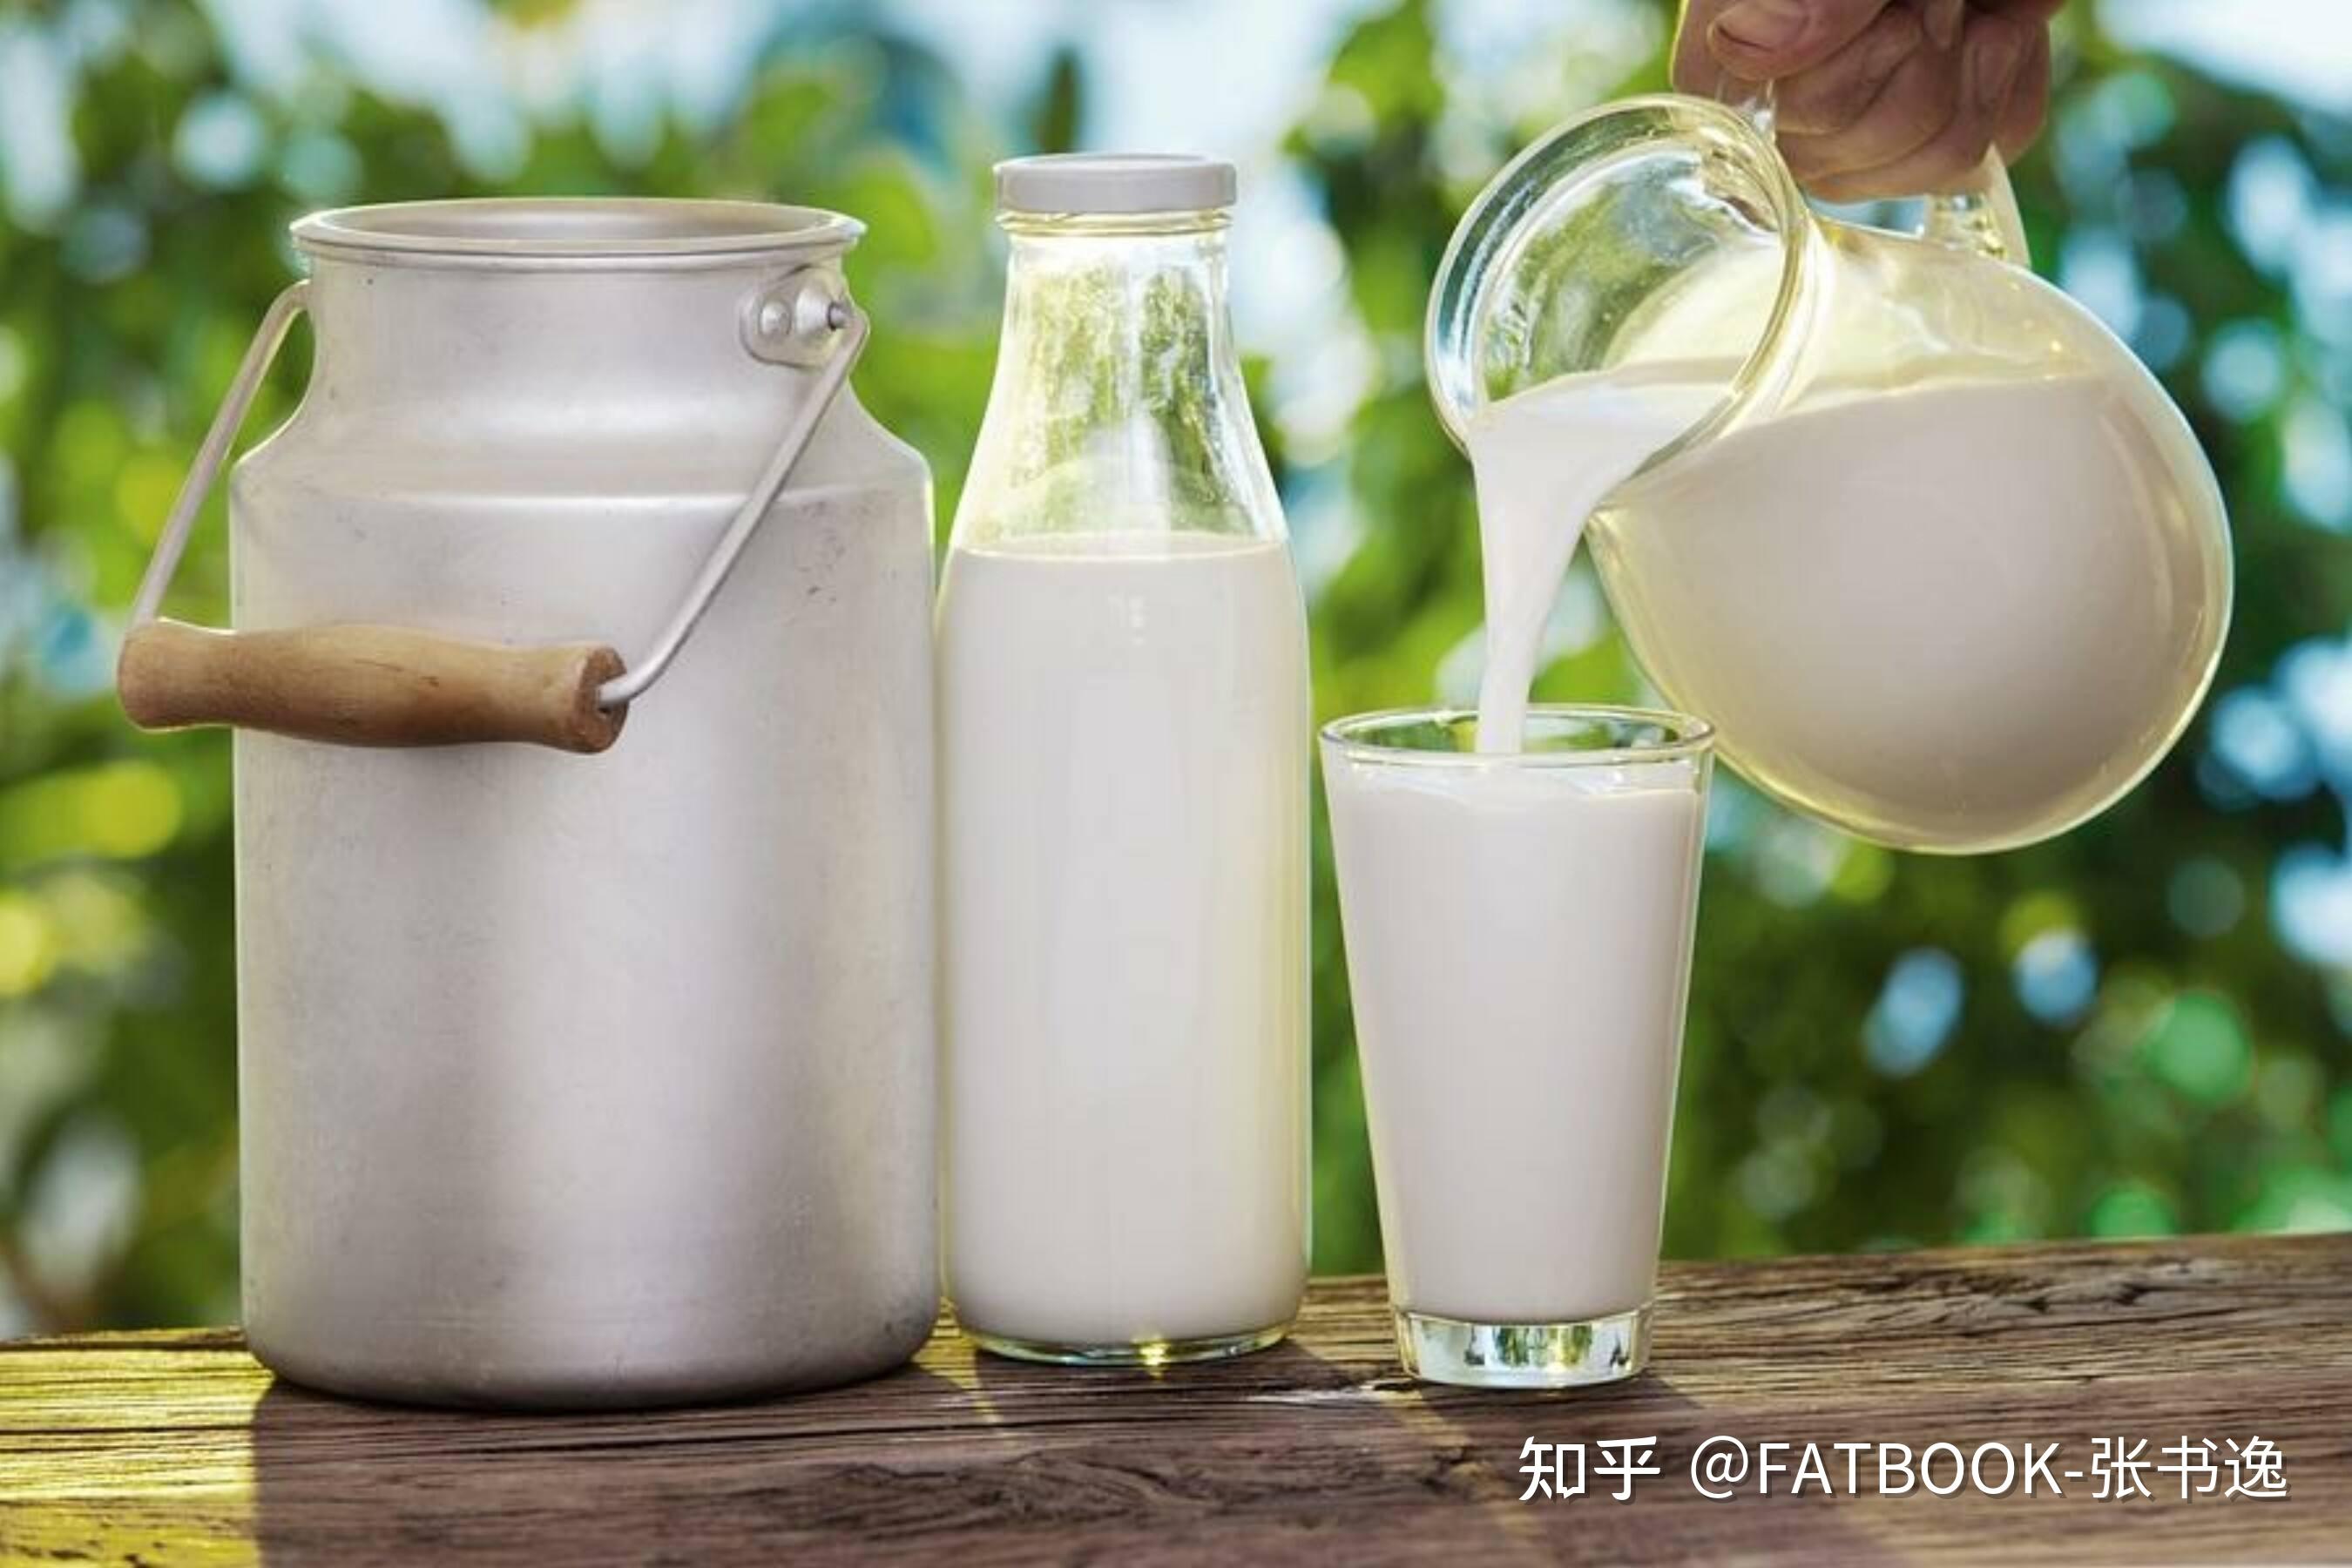 中医为什么不主张常喝牛奶？很多人或许不明白，看完也许能了解 - 知乎